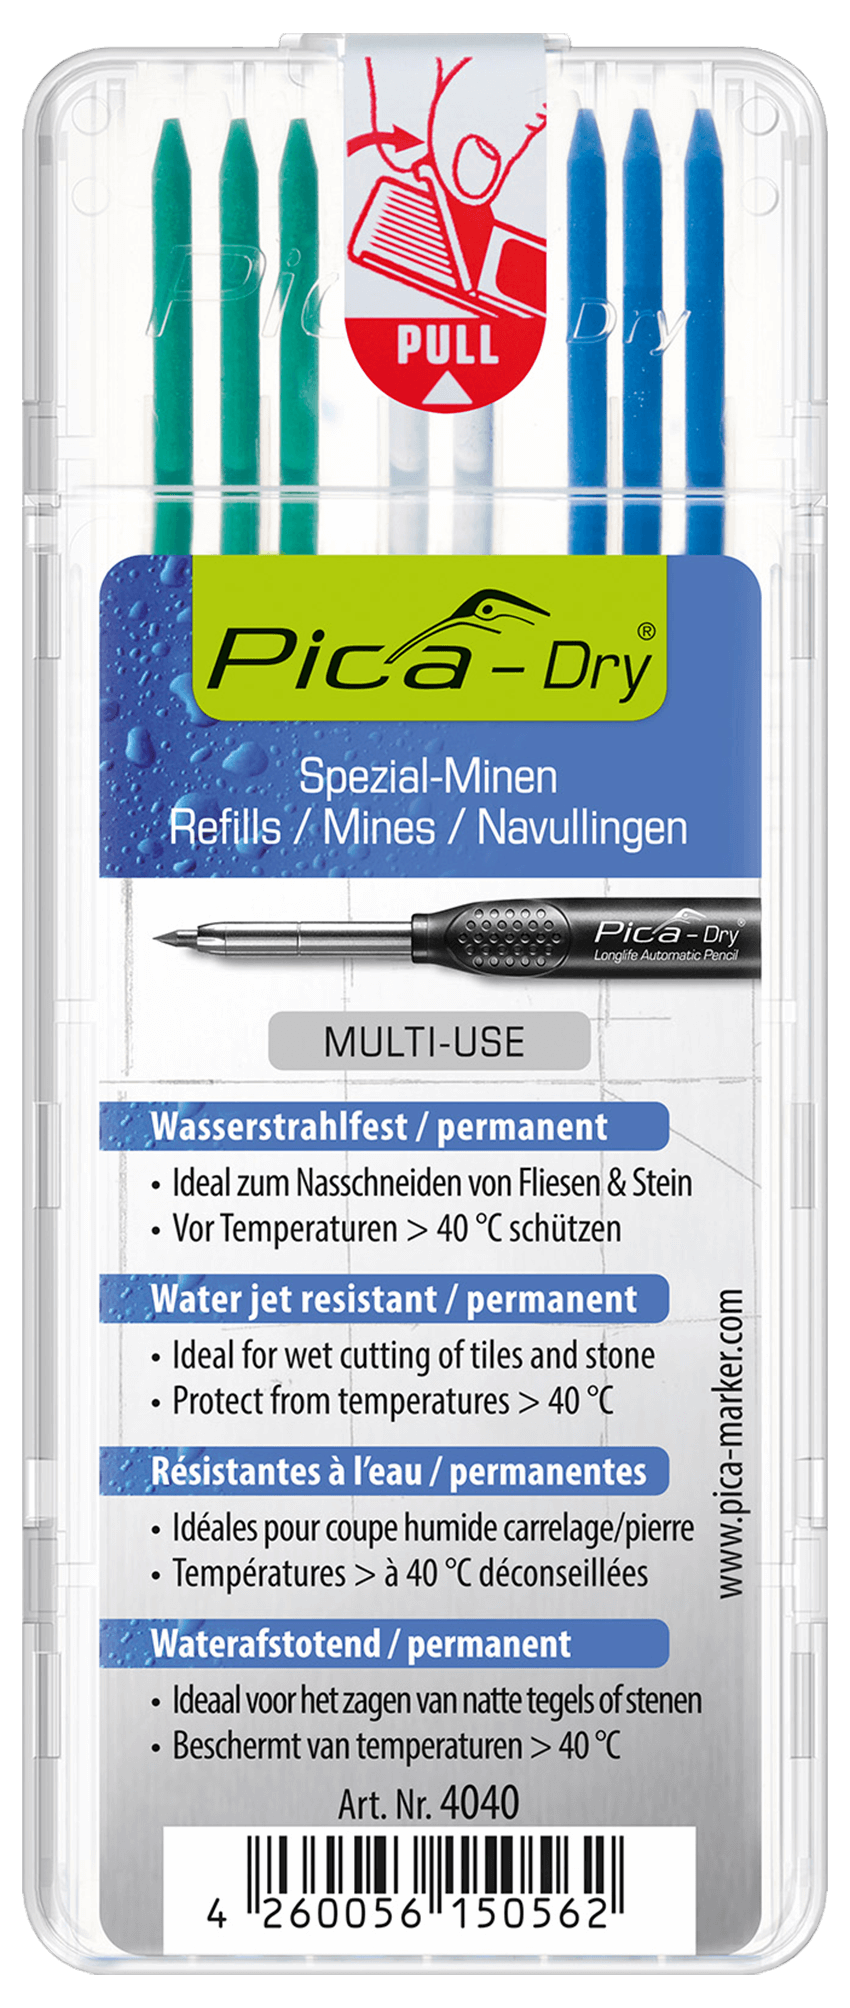 Pica Dry Longlife automatiska pennminor "vattentät" 4040